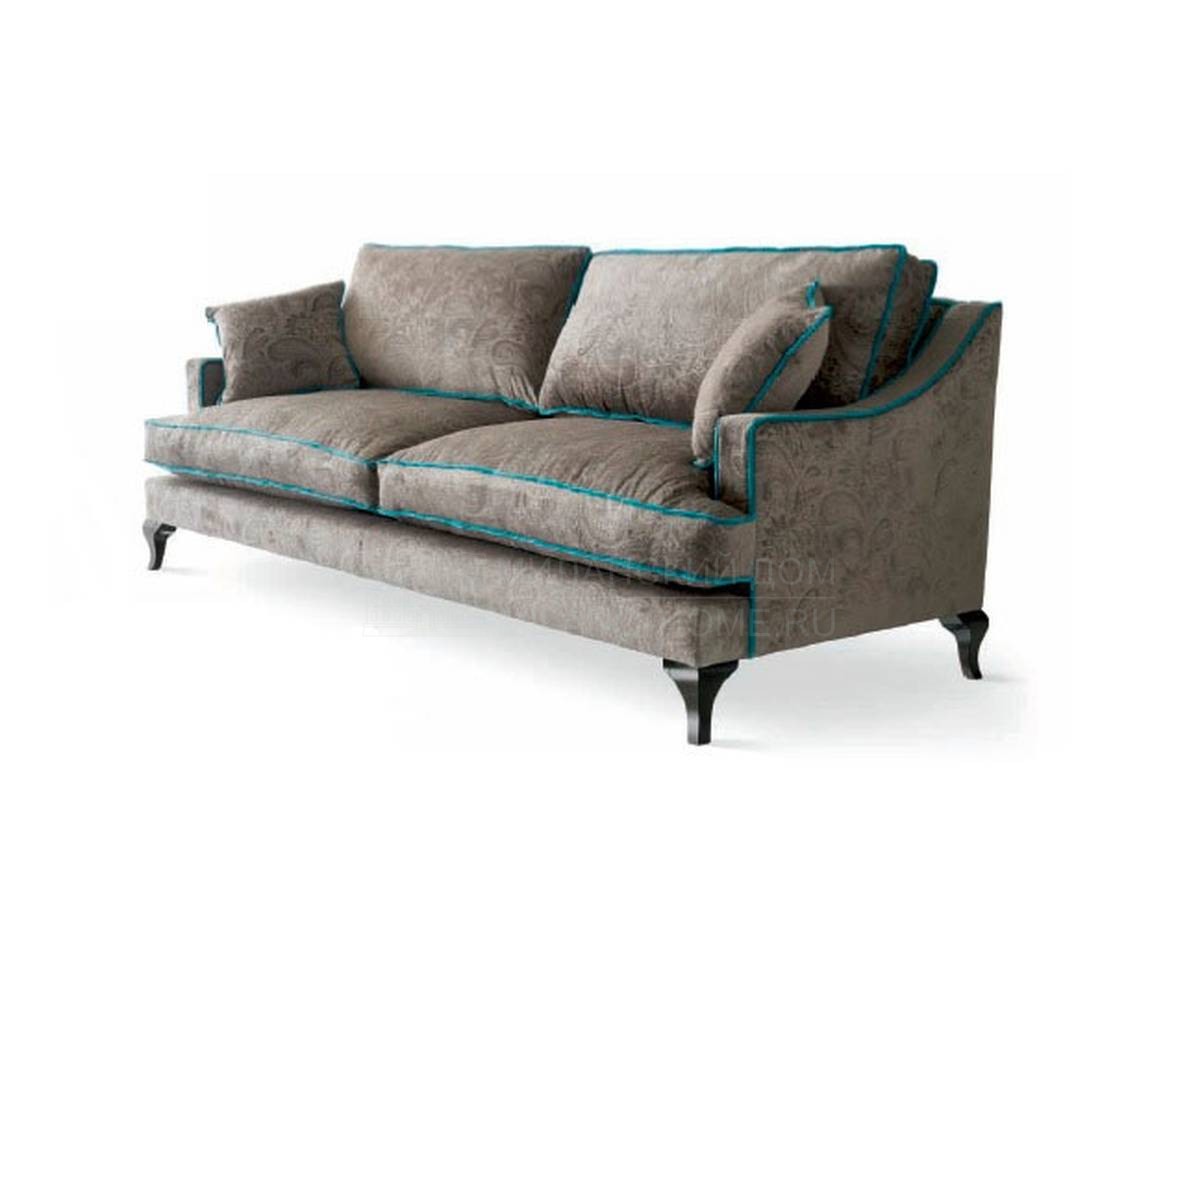 Прямой диван Scala/sofa из Испании фабрики LA EBANISTERIA